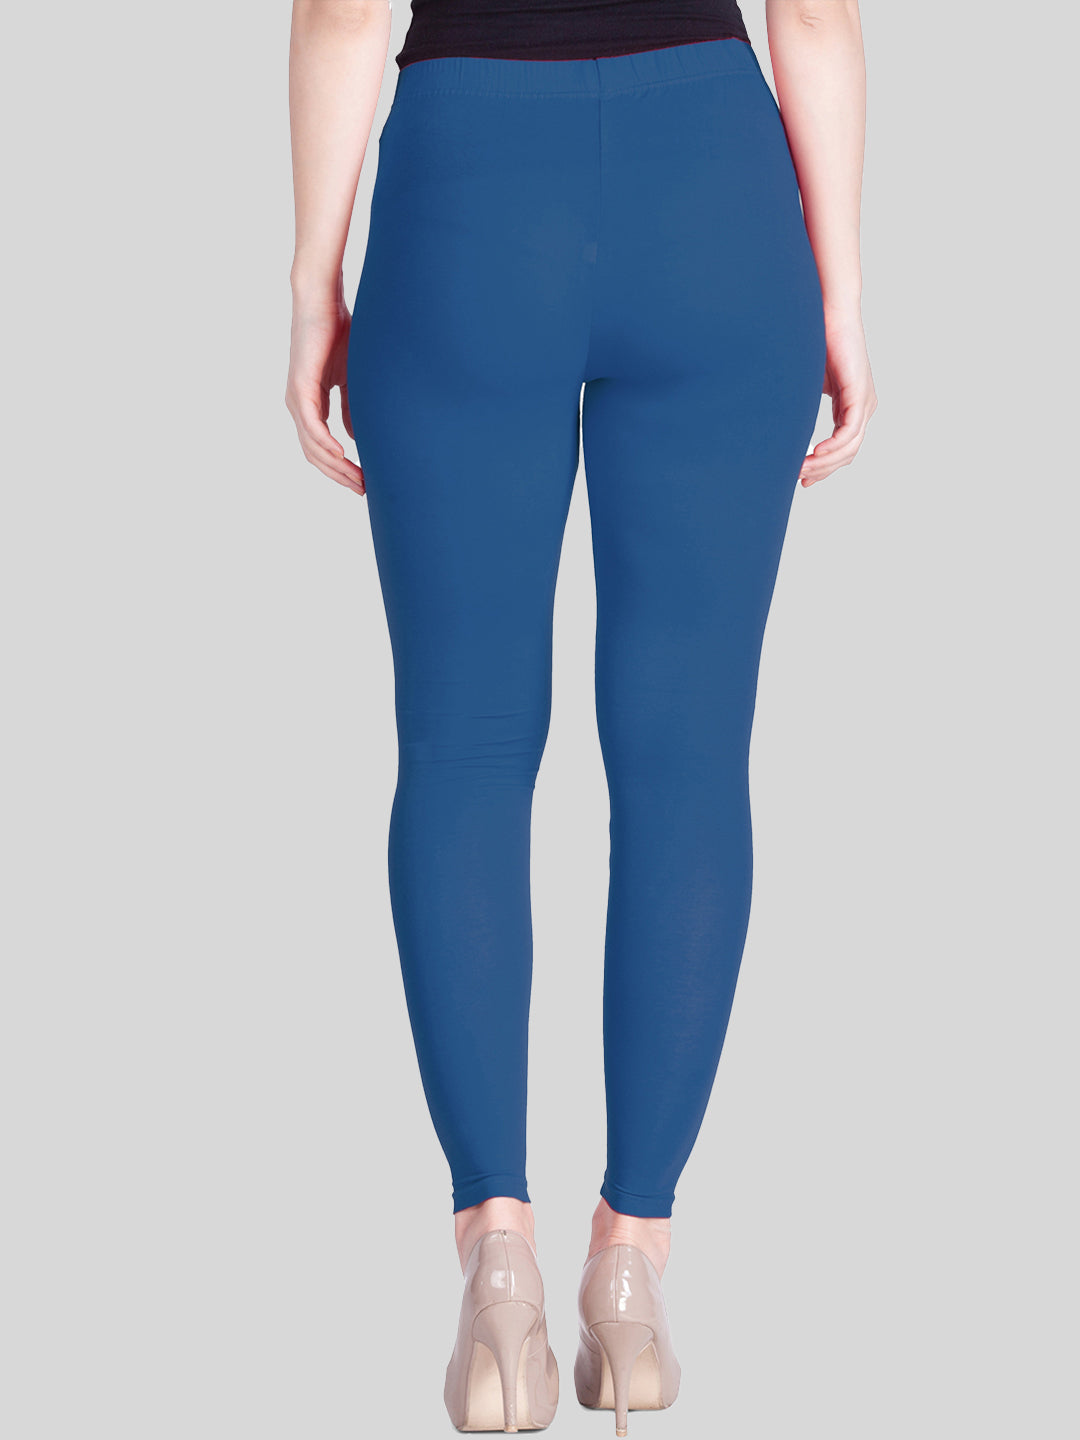 Sky Blue Womens Slim Fit Cotton Ankle Length Leggings Legging for women  Sizes  KEX  3767911